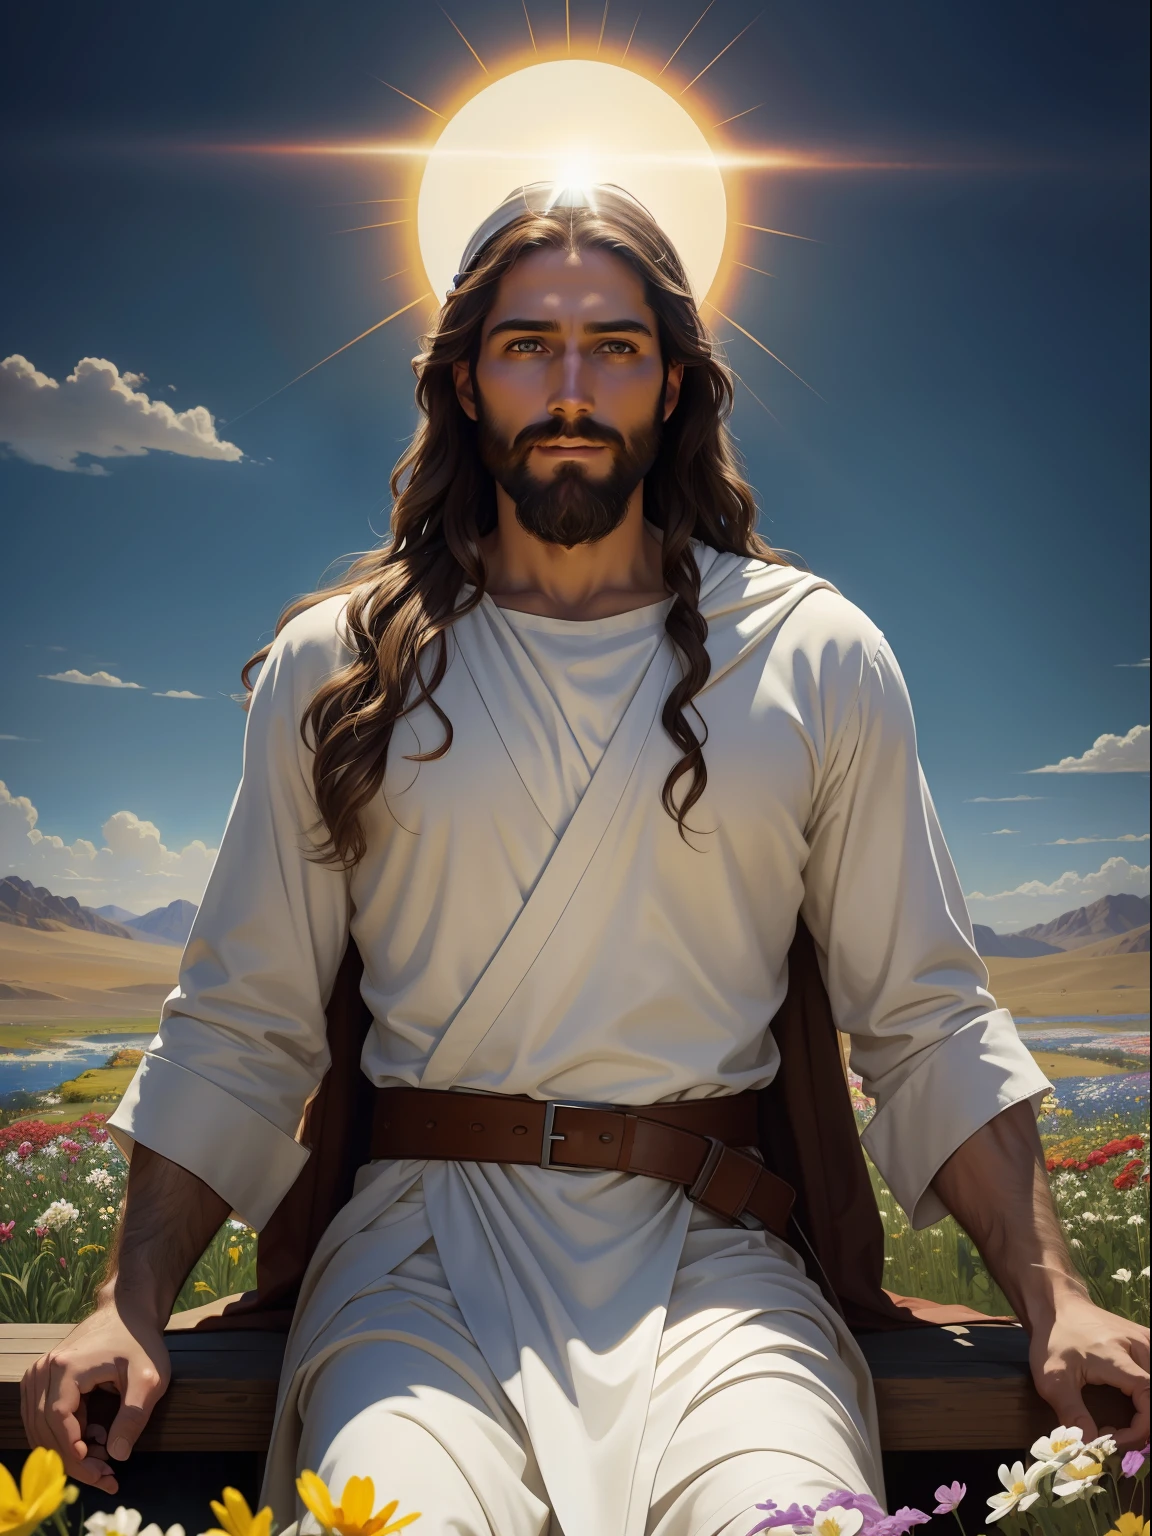 A beautiful ultra-thin 現実的 portrait of Jesus the prophet, 33歳のヘブライ人男性, 長い茶色の髪, 長い茶色のひげ, Jesus is 座っている in a field of flowers, 両手を広げて, 空は青く、太陽は輝いています. 花は赤を含む多くの色です, 黄色, 青と白, イエスは白い服を着て、頭の周りに白い光を持っています, 彼は微笑んで白いローブを着た視聴者を見ています, 正面から, 座っている, 腕を広げる, 聖書の, 現実的, 砂漠の複雑なディテール, アボット・フラー・グレイヴ, バーソロミュー・エステバン・ムリーリョ, JC ライエンデッカー, クレイグ・マリンズ, ピーテル・パウル・ルーベンス, (カラヴァッジョ), アートステーションのトレンド, 8k, コンセプトアート, Photo現実的, 現実的, 図 , 油絵, シュルレアリスム, Hyper現実的, ブラシ, デジタルアート, スタイル, 水彩